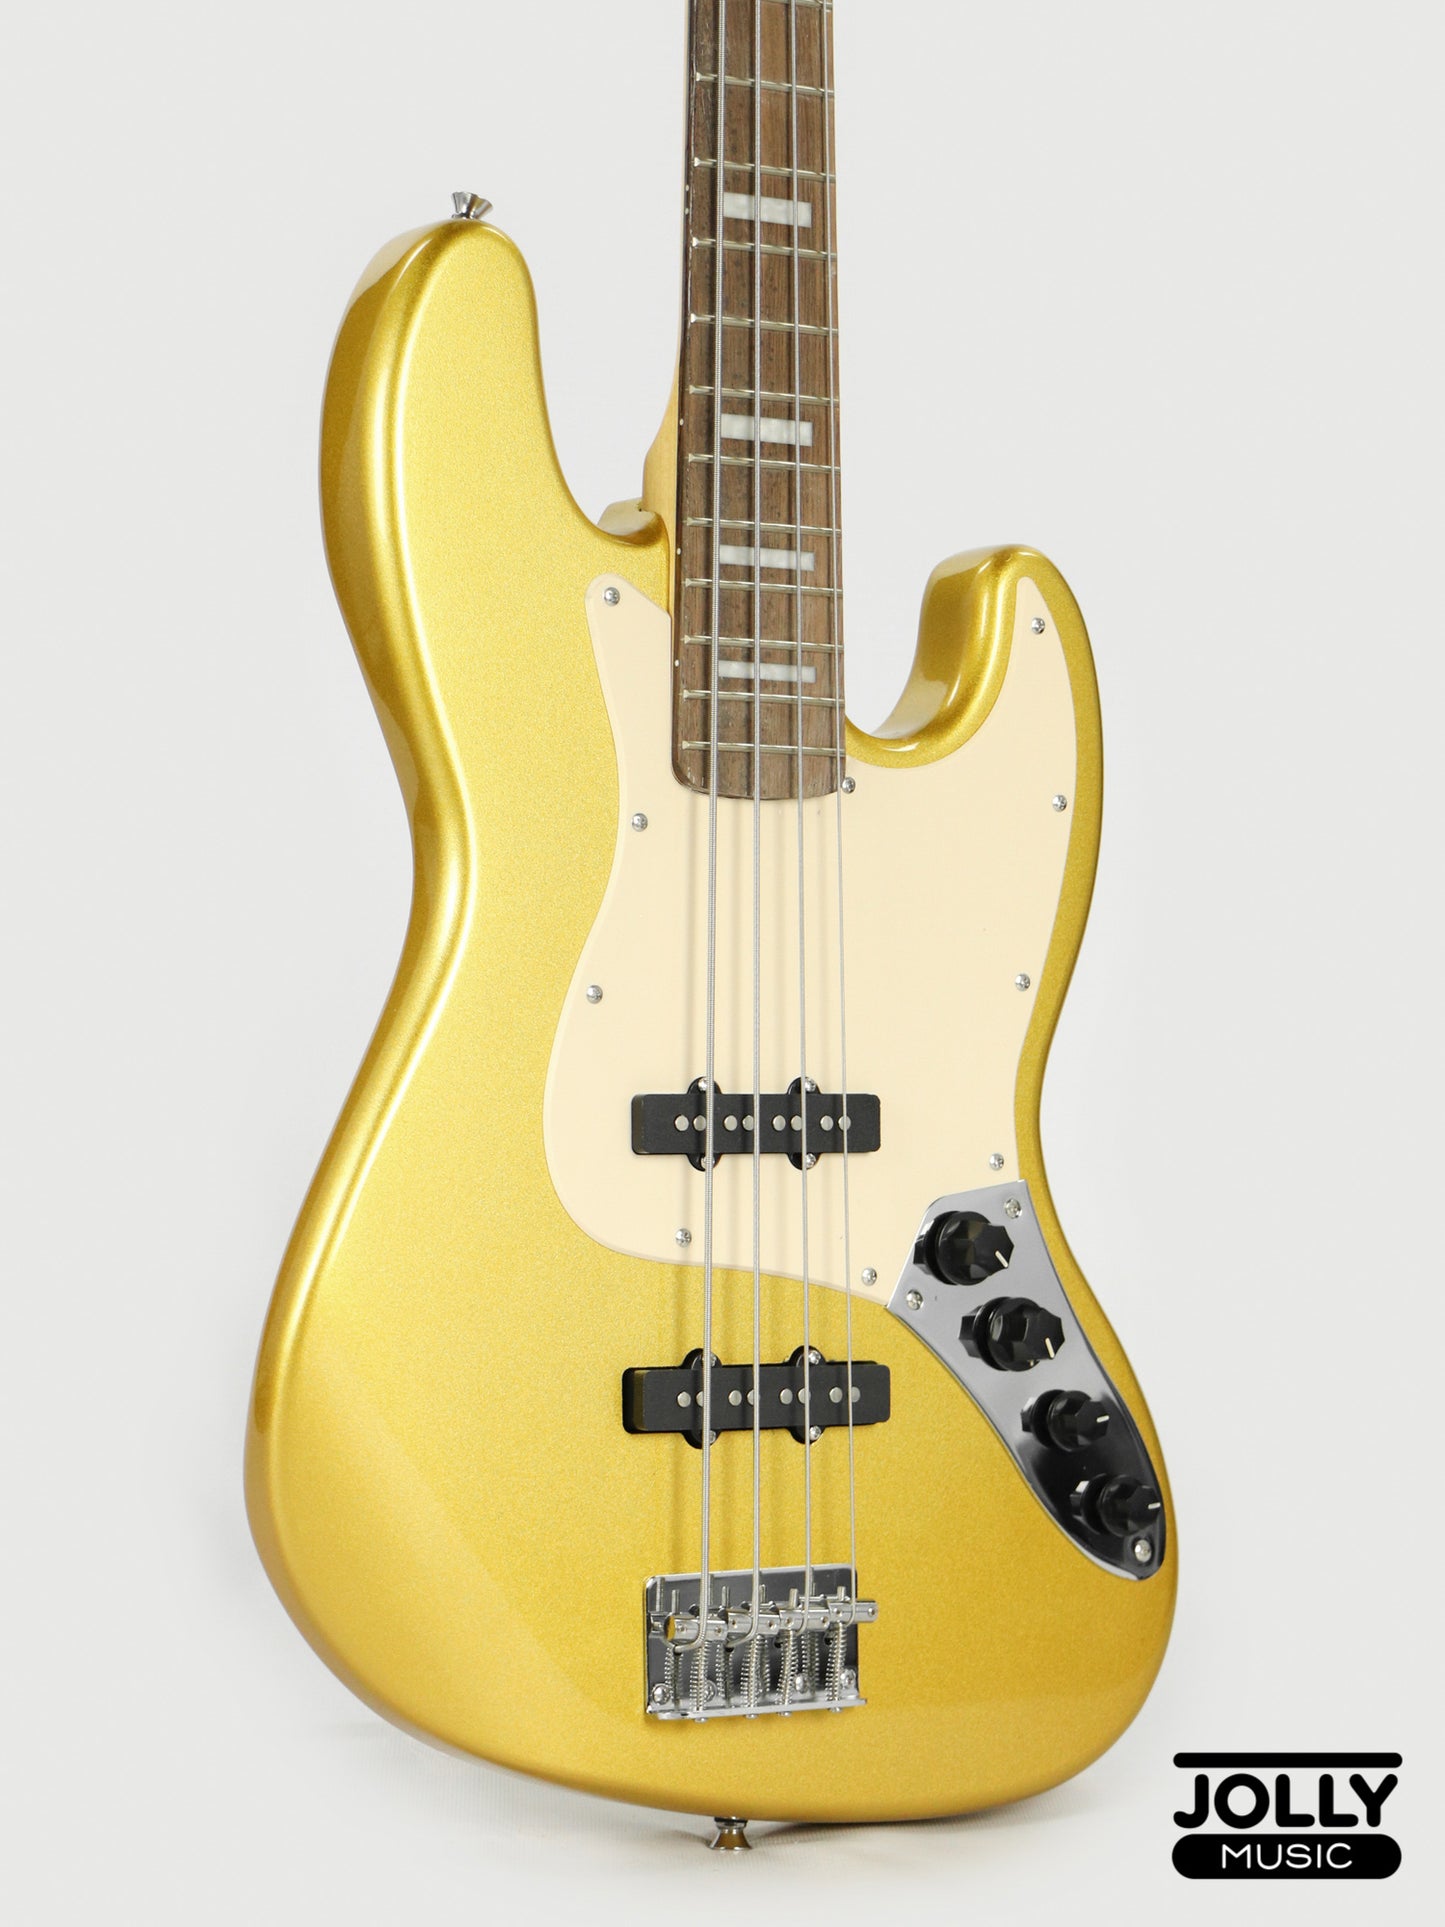 JCraft JB-2A J-Offset 5-String Bass Guitar - Metallic Gold